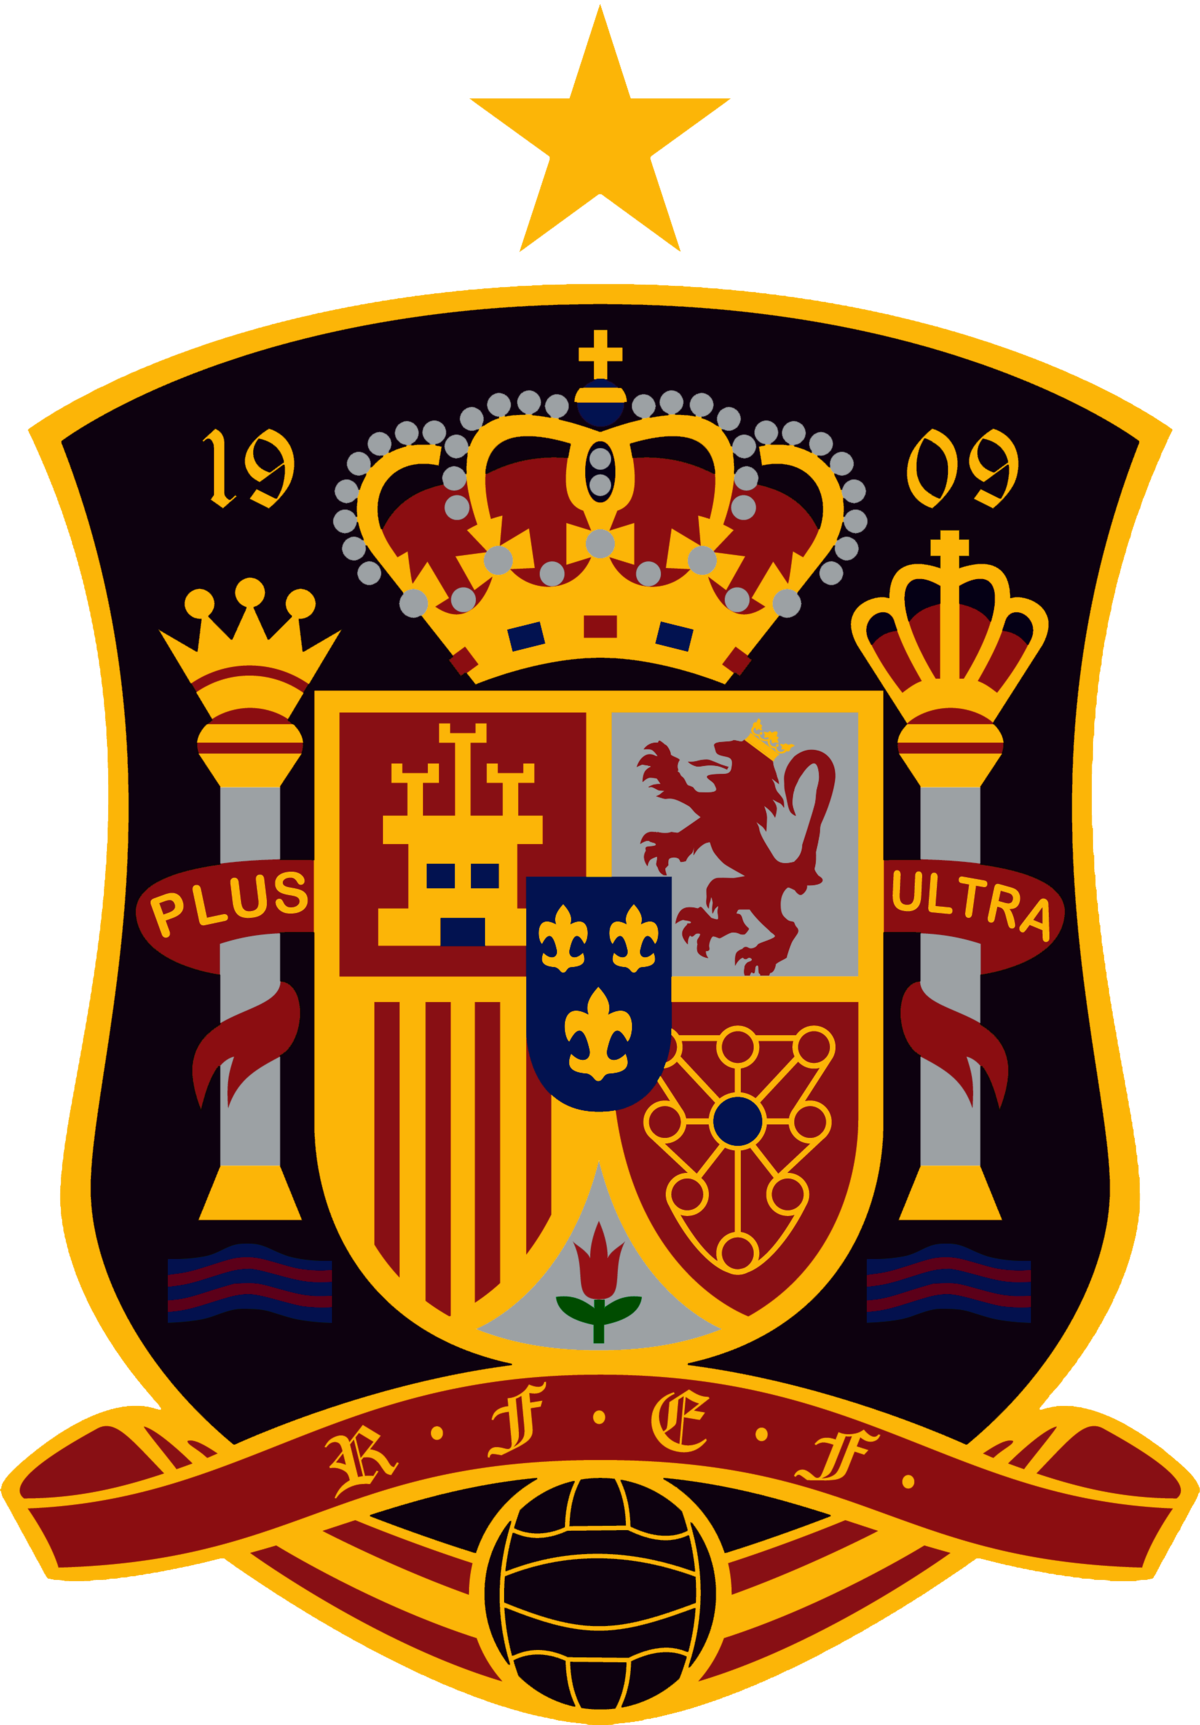 Espanjan jalkapallomaajoukkue – Wikipedia